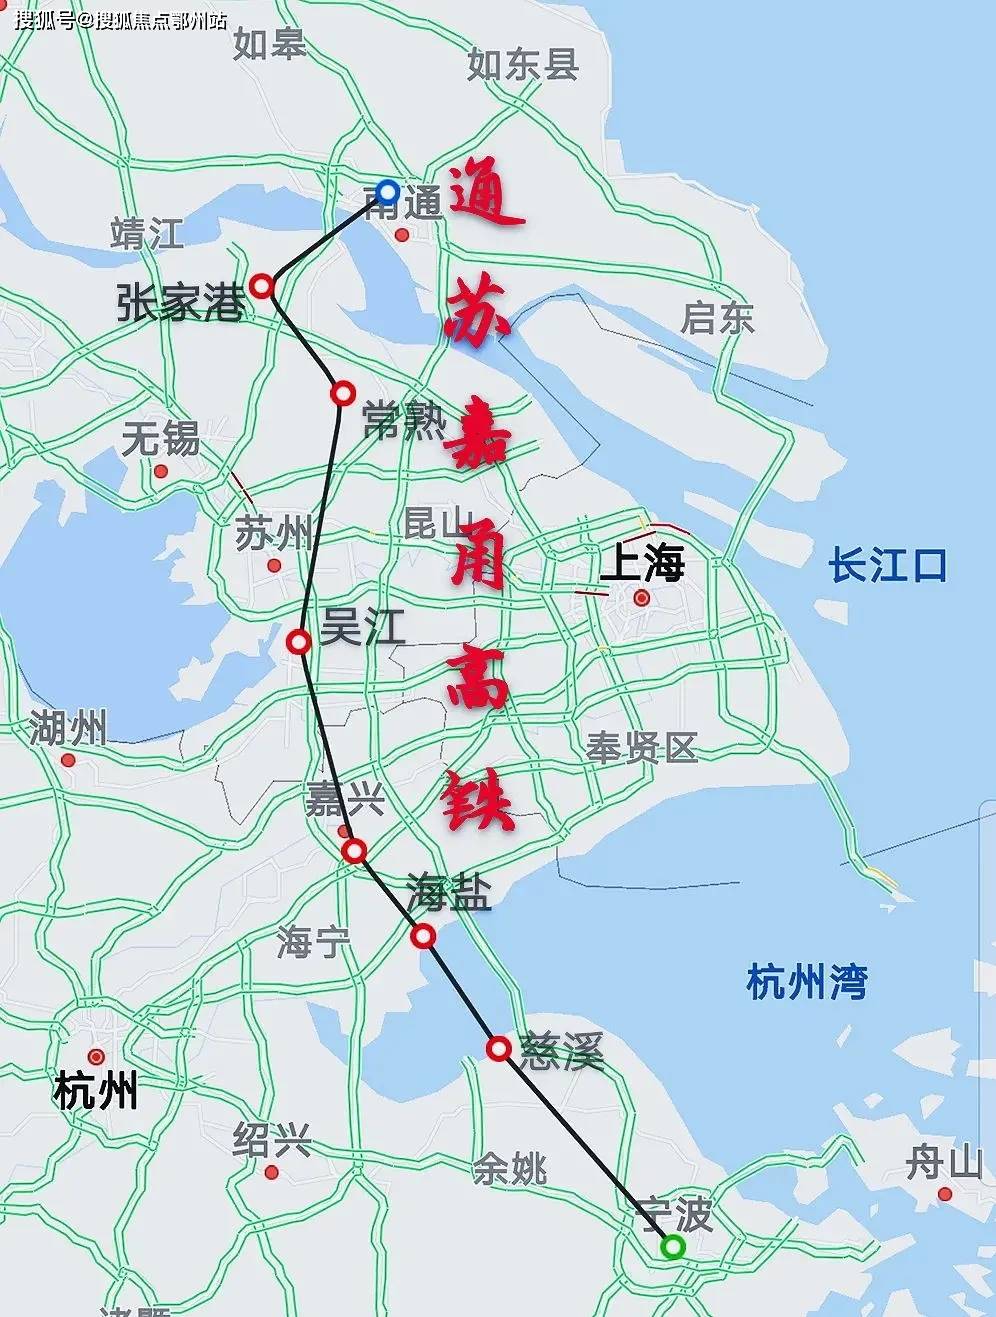 通苏嘉甬铁路规划图